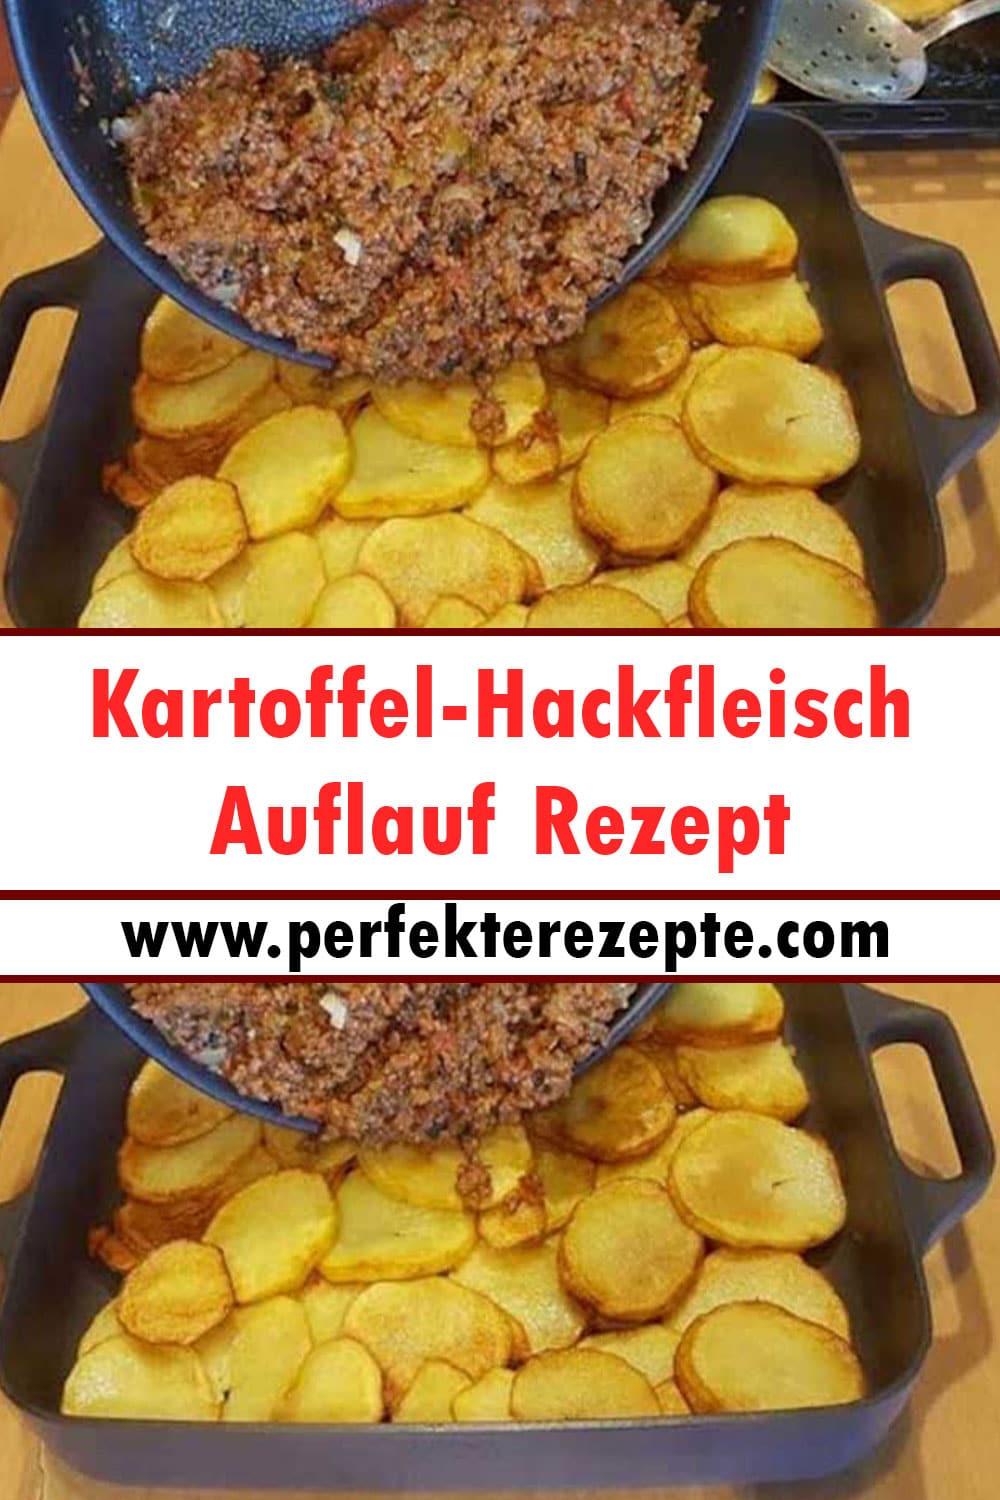 Kartoffel-Hackfleisch Auflauf Rezept